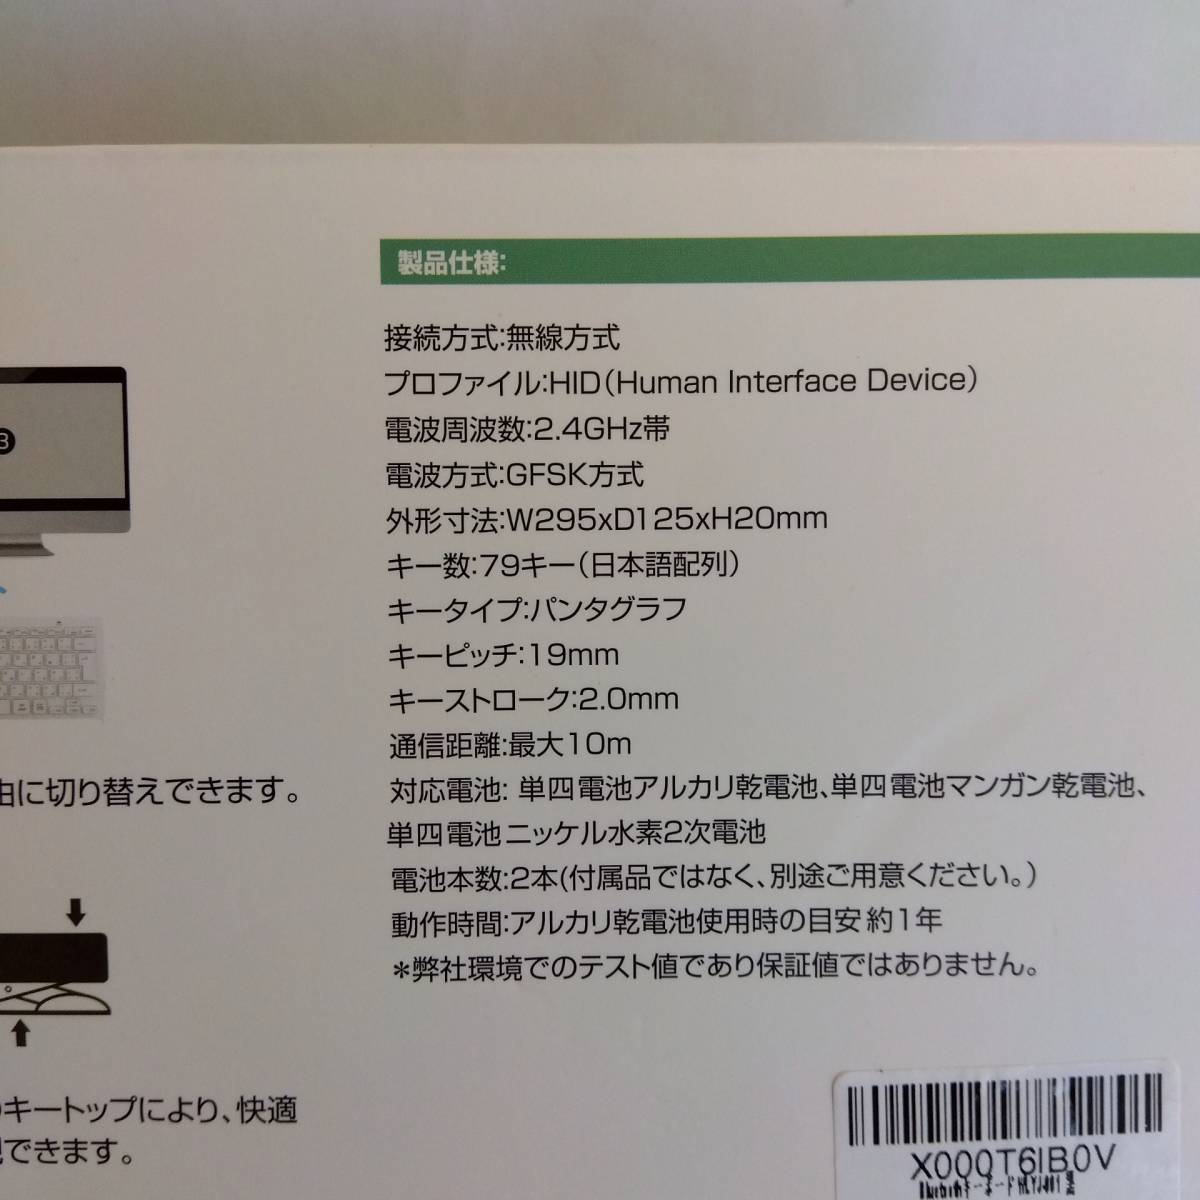 Ewin キーボード ワイヤレス bluetooth 小型 キーボード ios android Windows mac多システム対応 軽量 超薄型 日本語説明書 ブラック